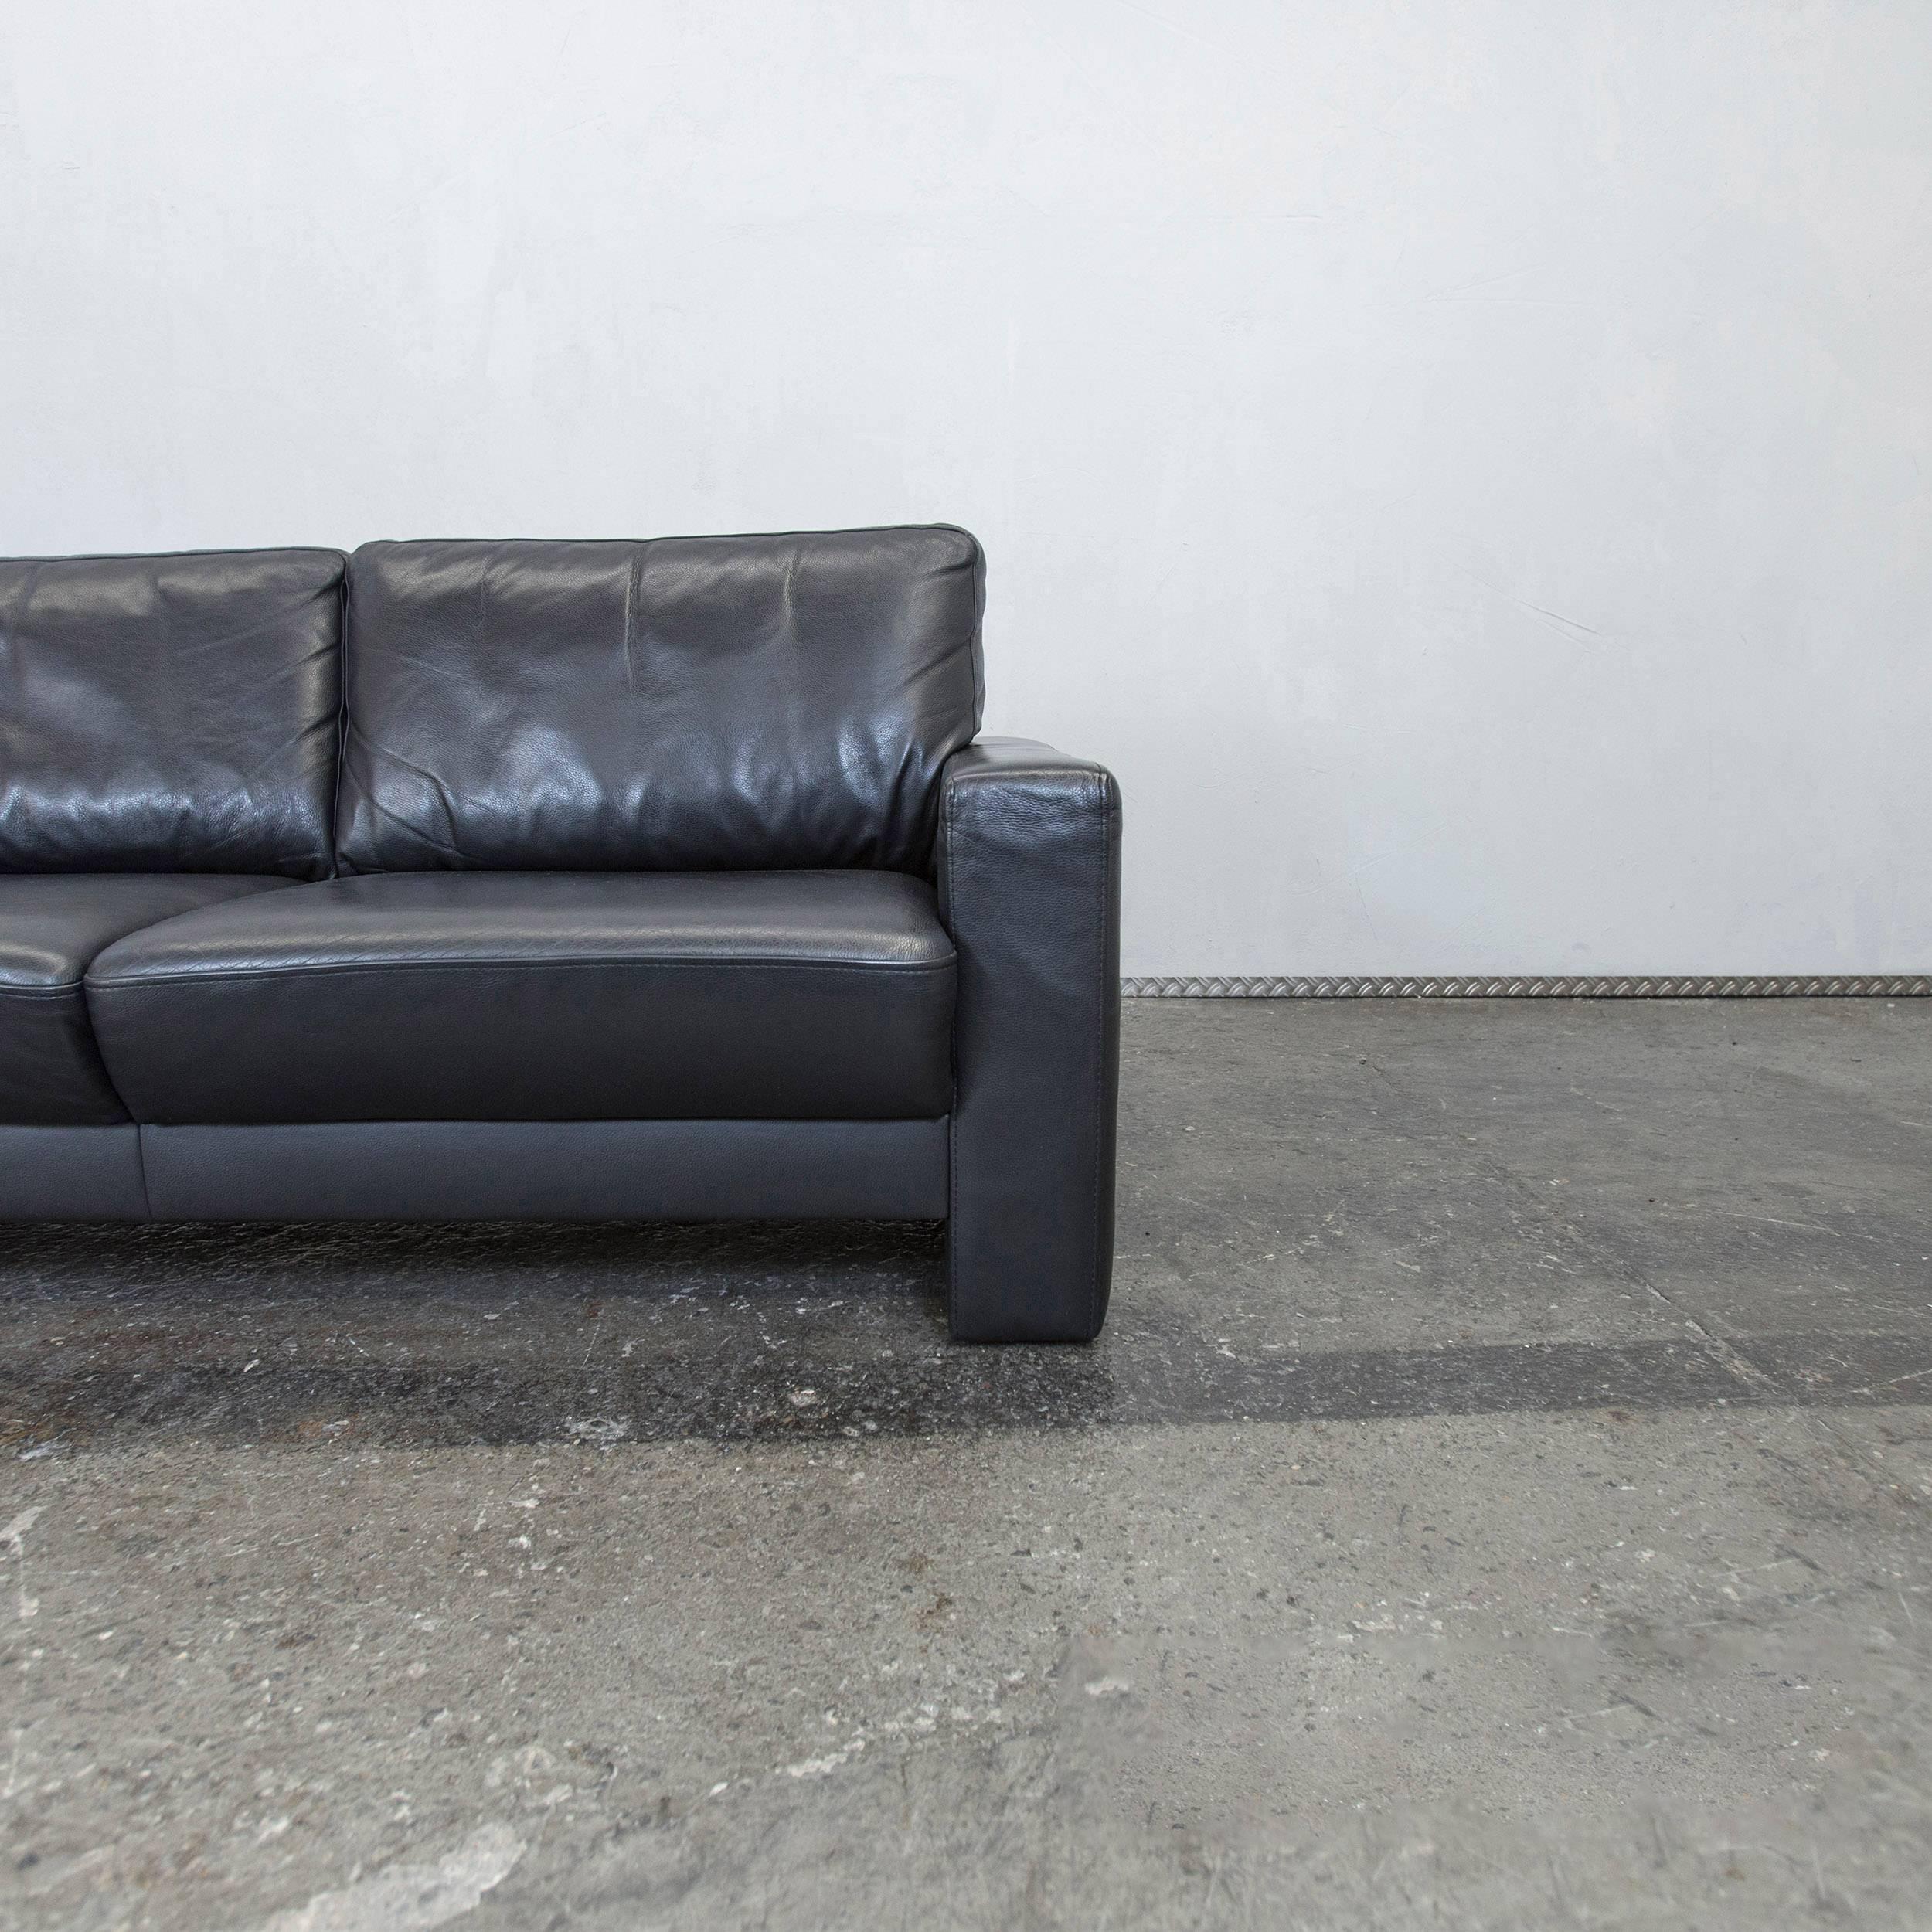 German Külkens & Sohn Designer Leather Sofa Black Two-Seat Couch Modern For Sale